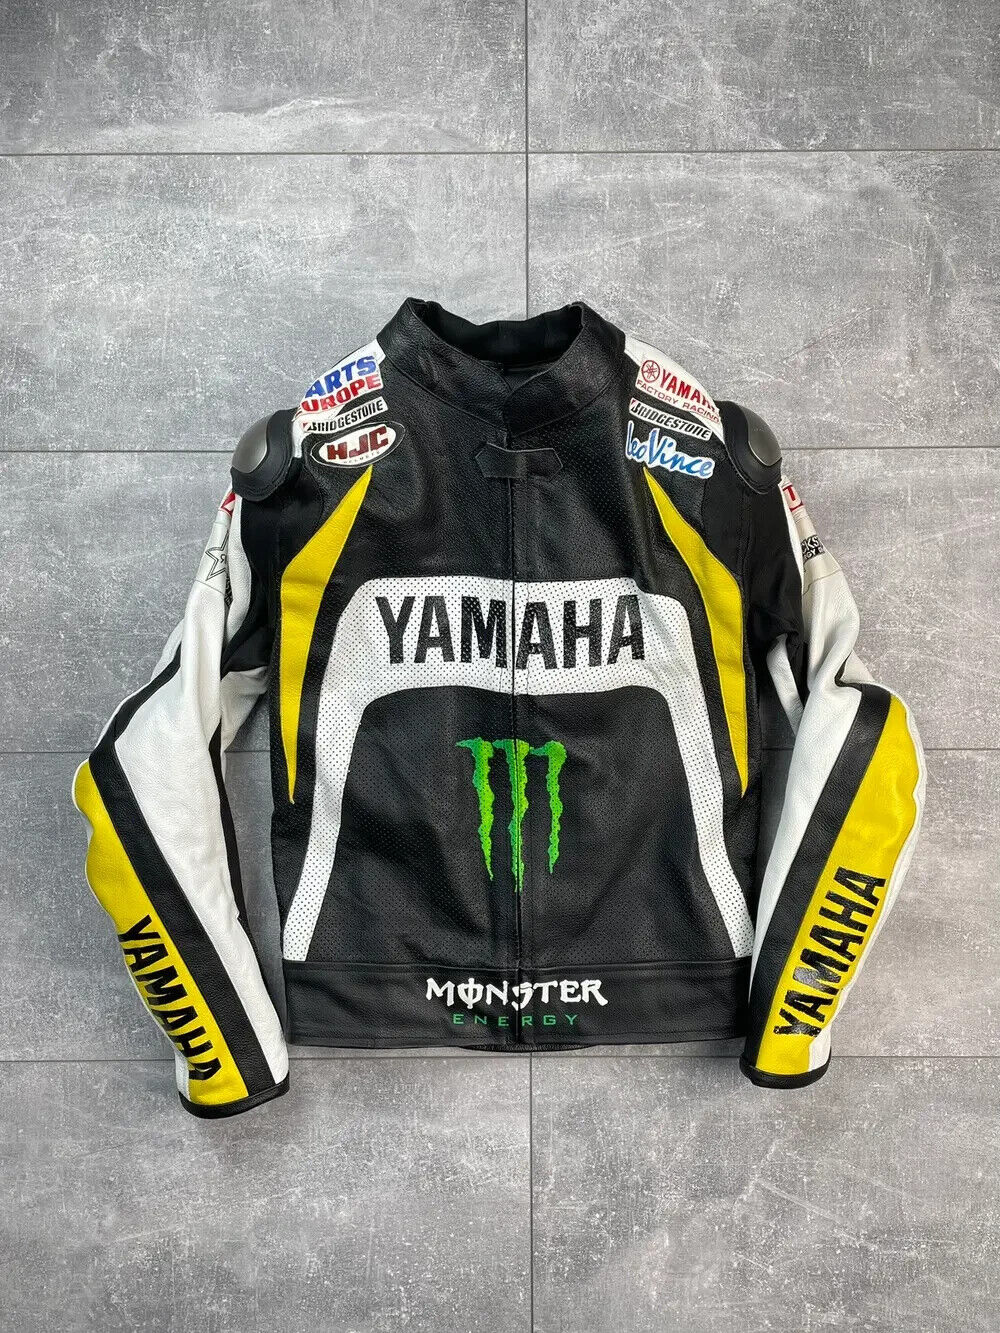 Yamaha Men's Motorbike Racing Genuine Cowhide Leather Motorcycle Biker Jacket